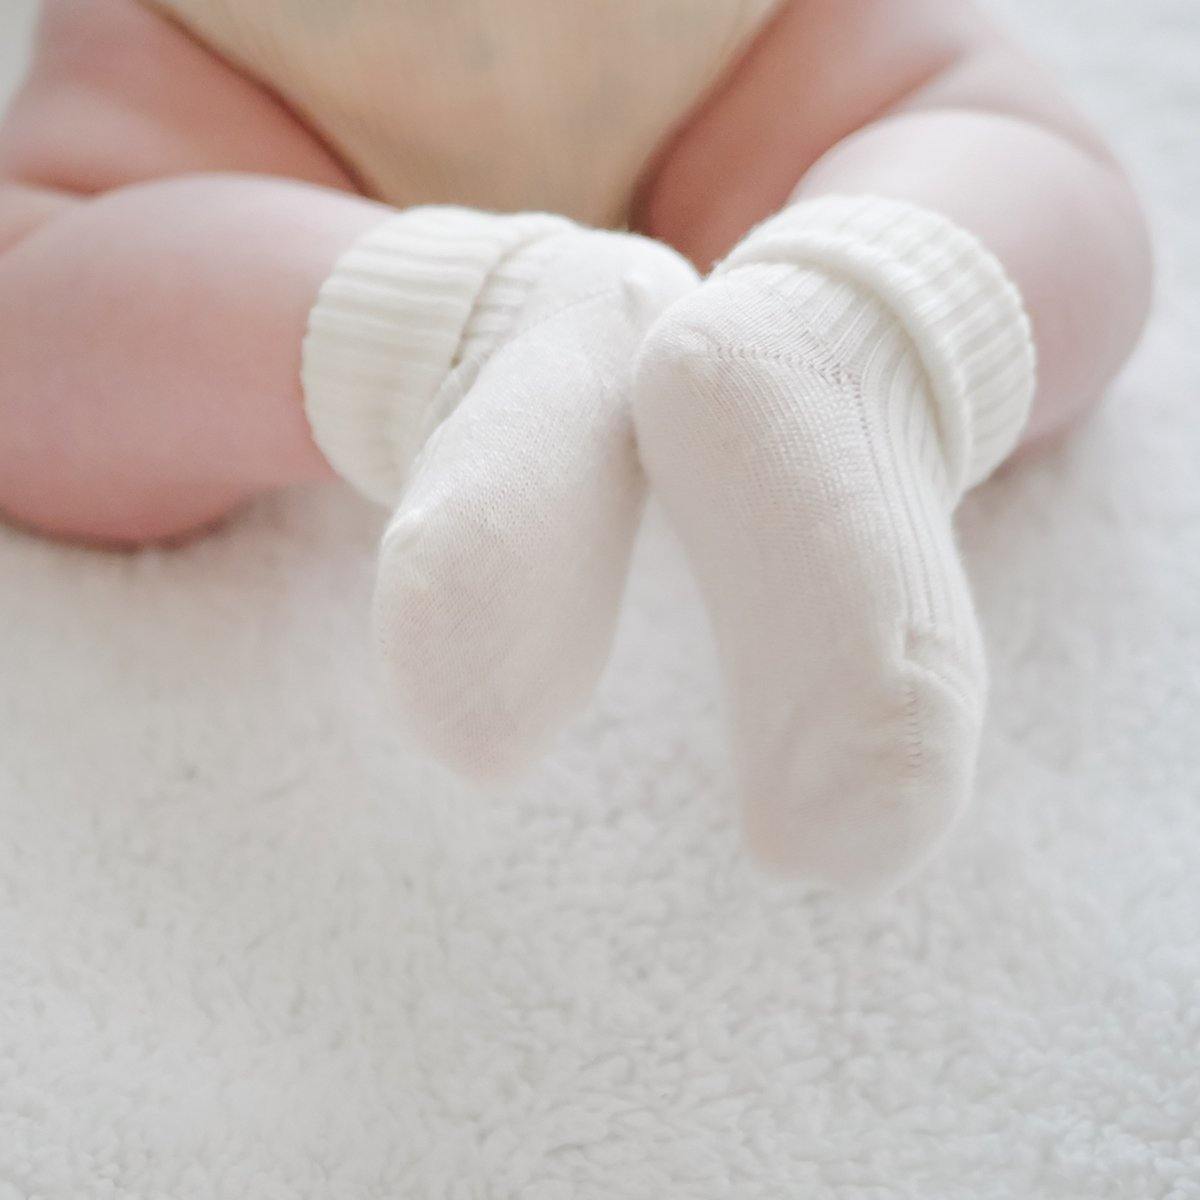 Baby wearing Woolino Merino Wool Baby Socks - 2 Pairs - Gray/White